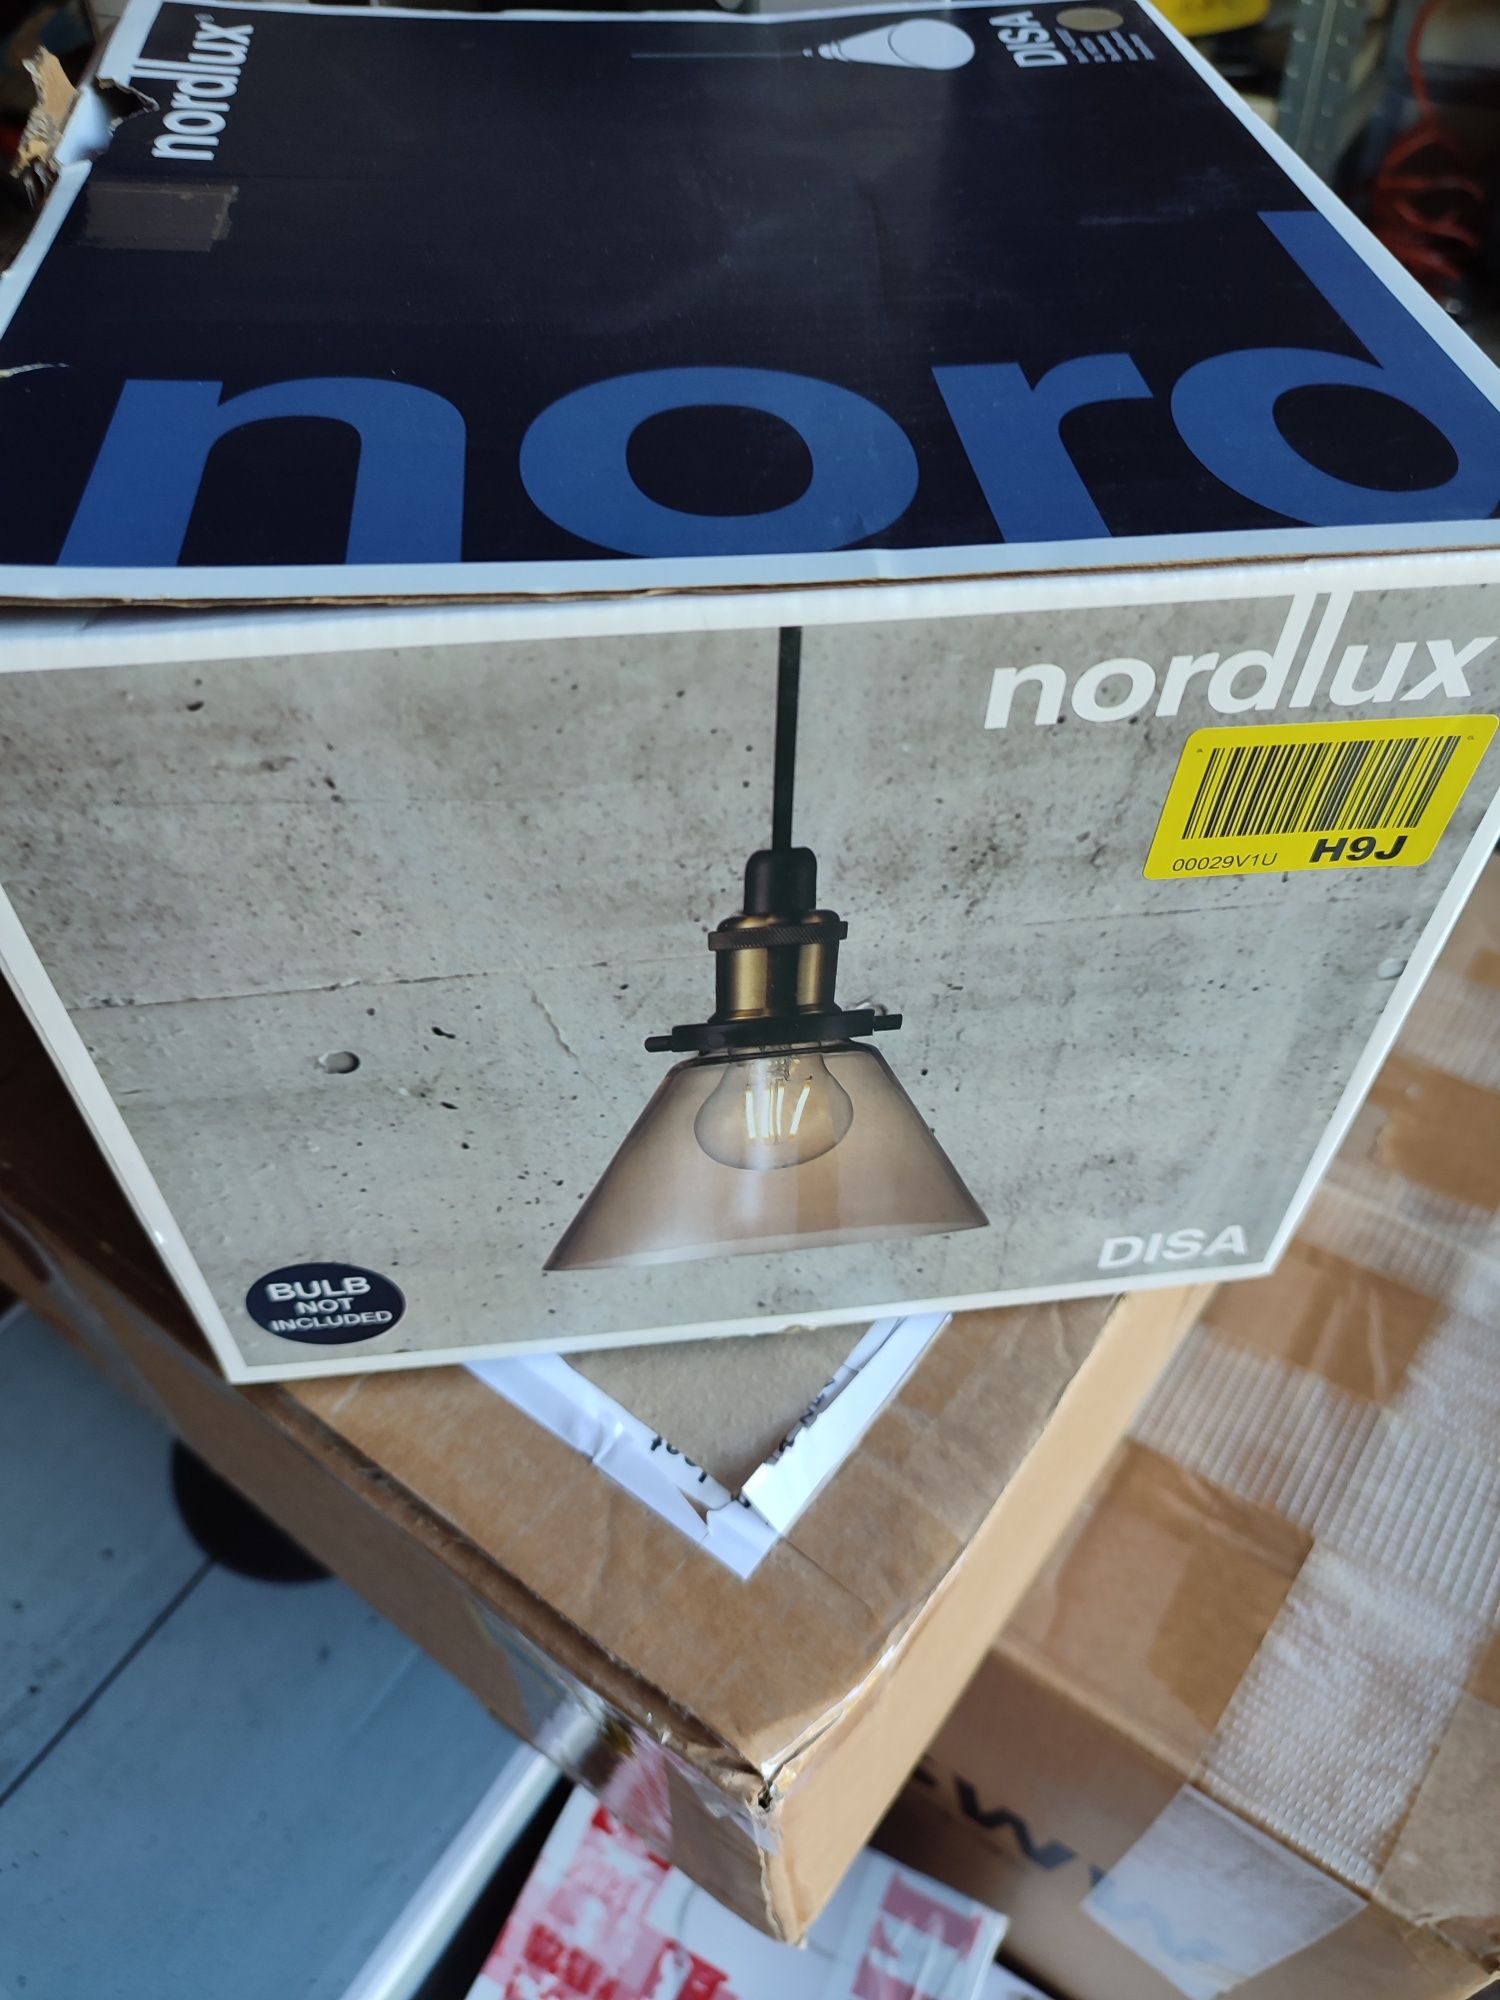 Lampa wisząca firmy Nordlux 1punktowe światło